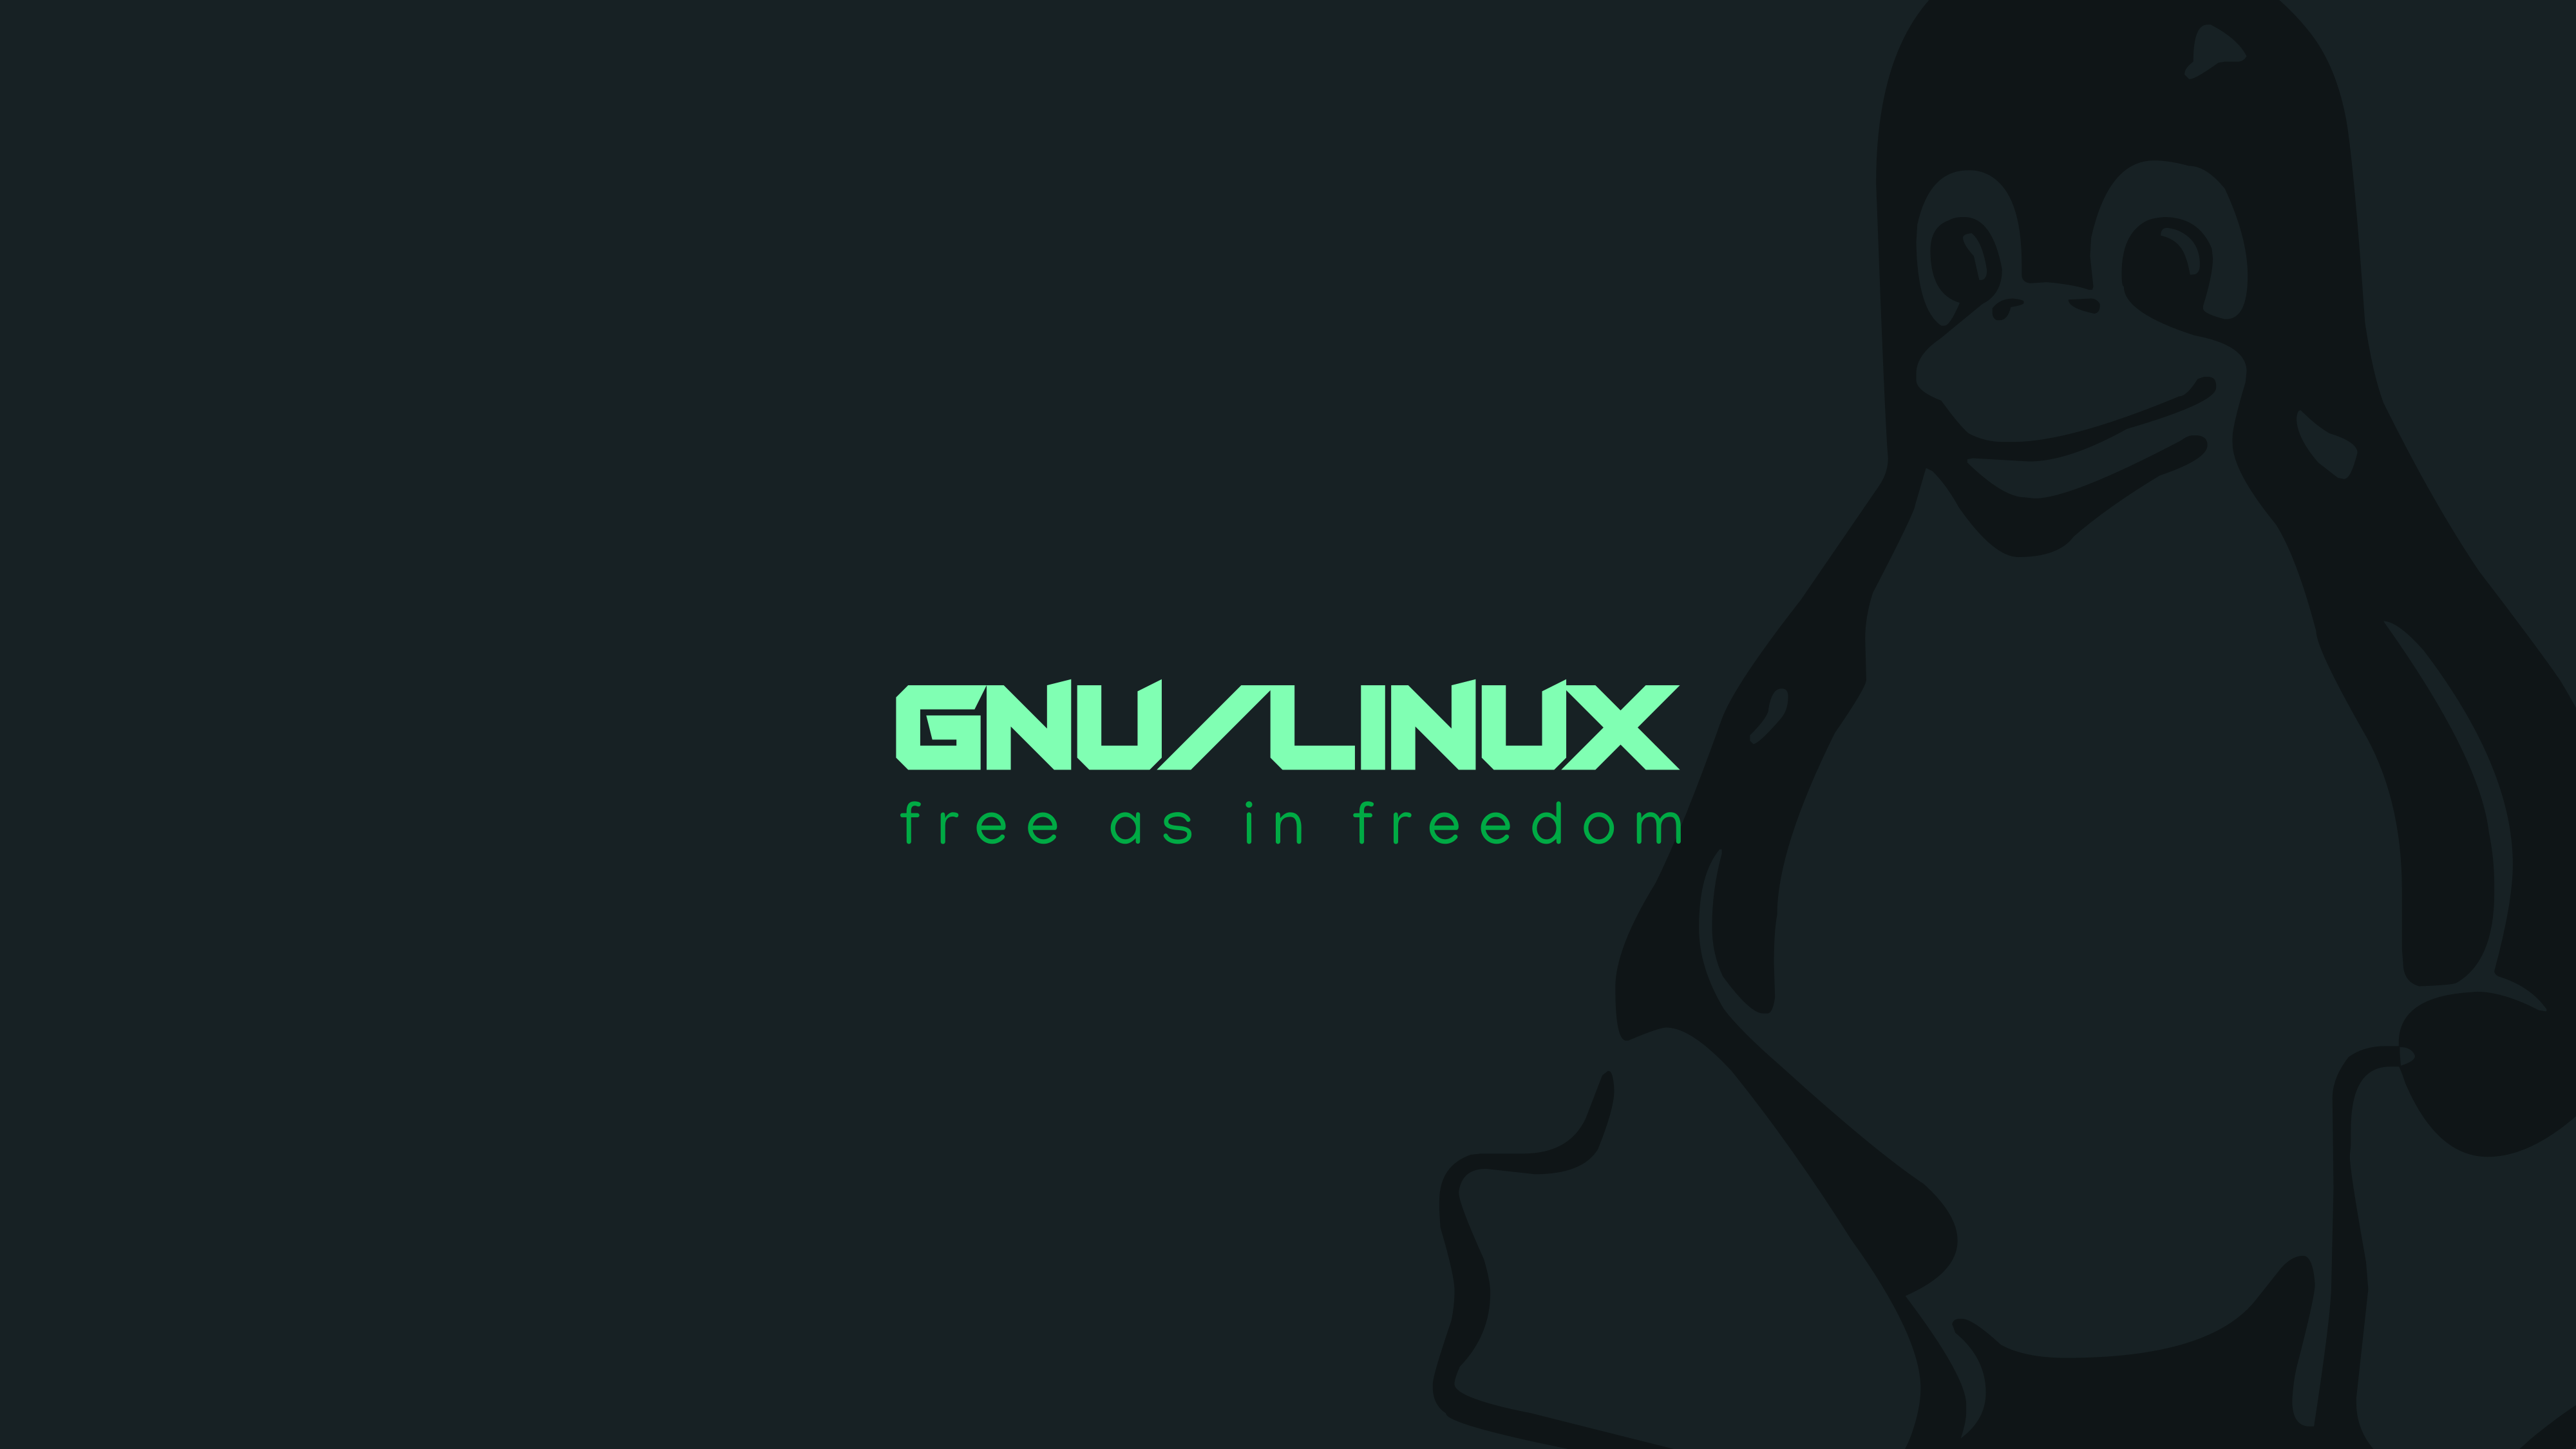 GNU Linux Wallpaper by itsfoss on DeviantArt